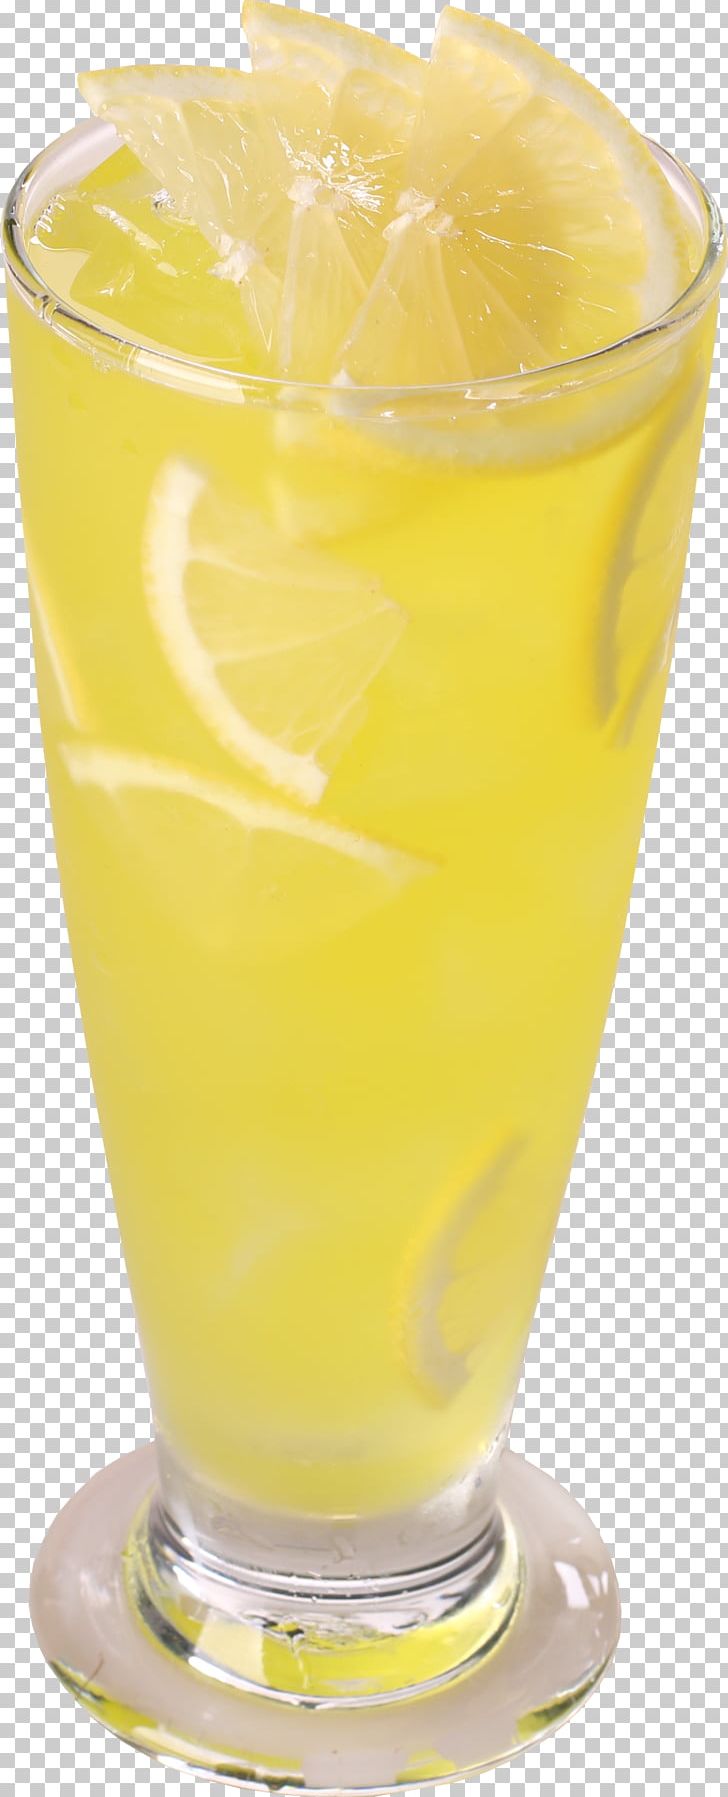 Orange Juice Fuzzy Navel Lemon Juice Lemonade PNG, Clipart, Citric Acid, Cocktail, Cocktail Garnish, Download, Drink Free PNG Download